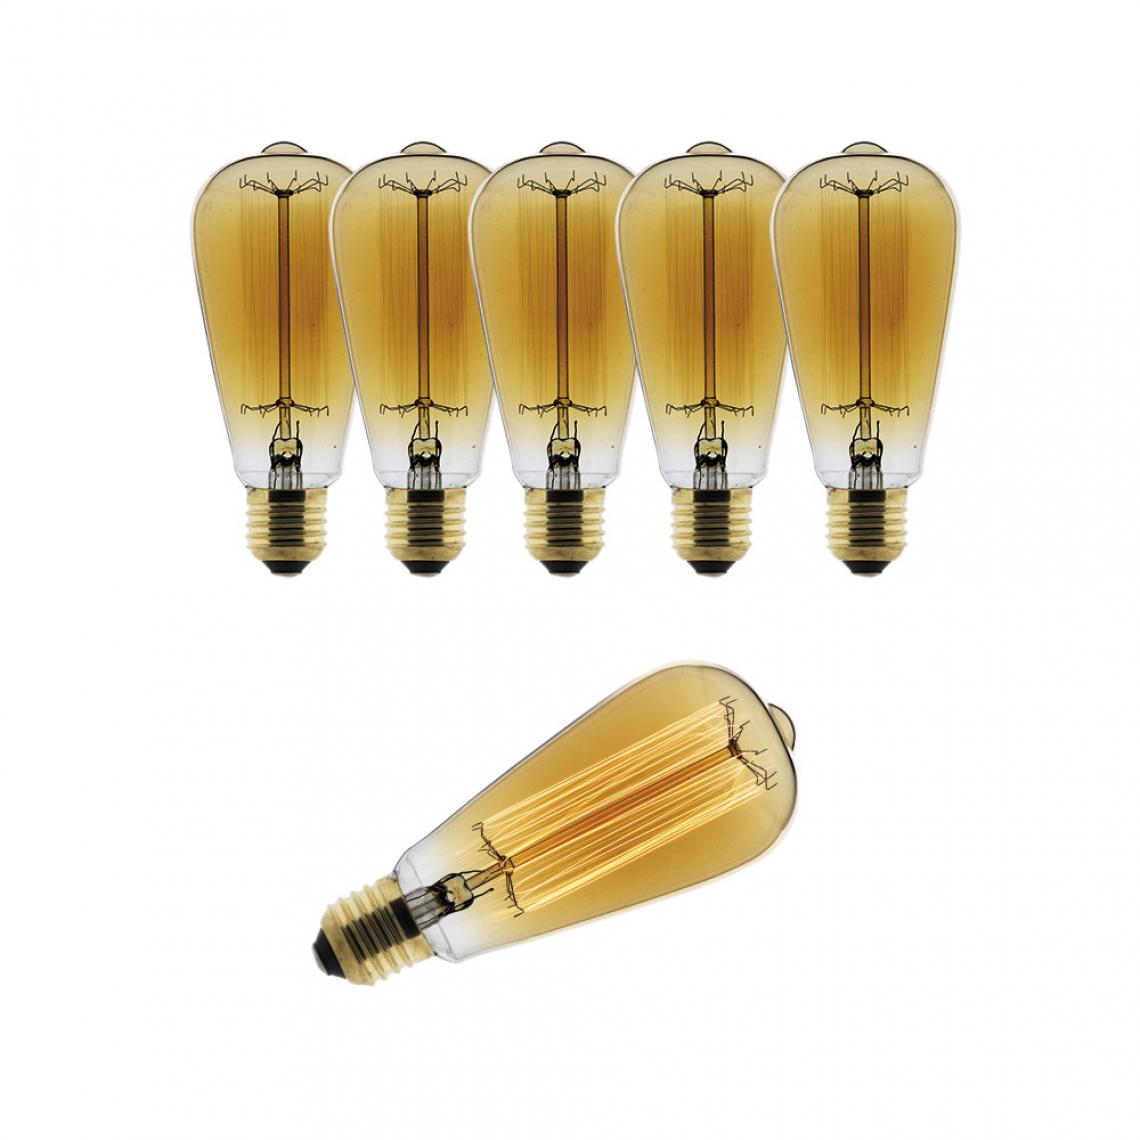 Elexity - Lot de 6 ampoules Déco filament carbone Edison 25W E27 2700K (blanc chaud) - Ampoules LED